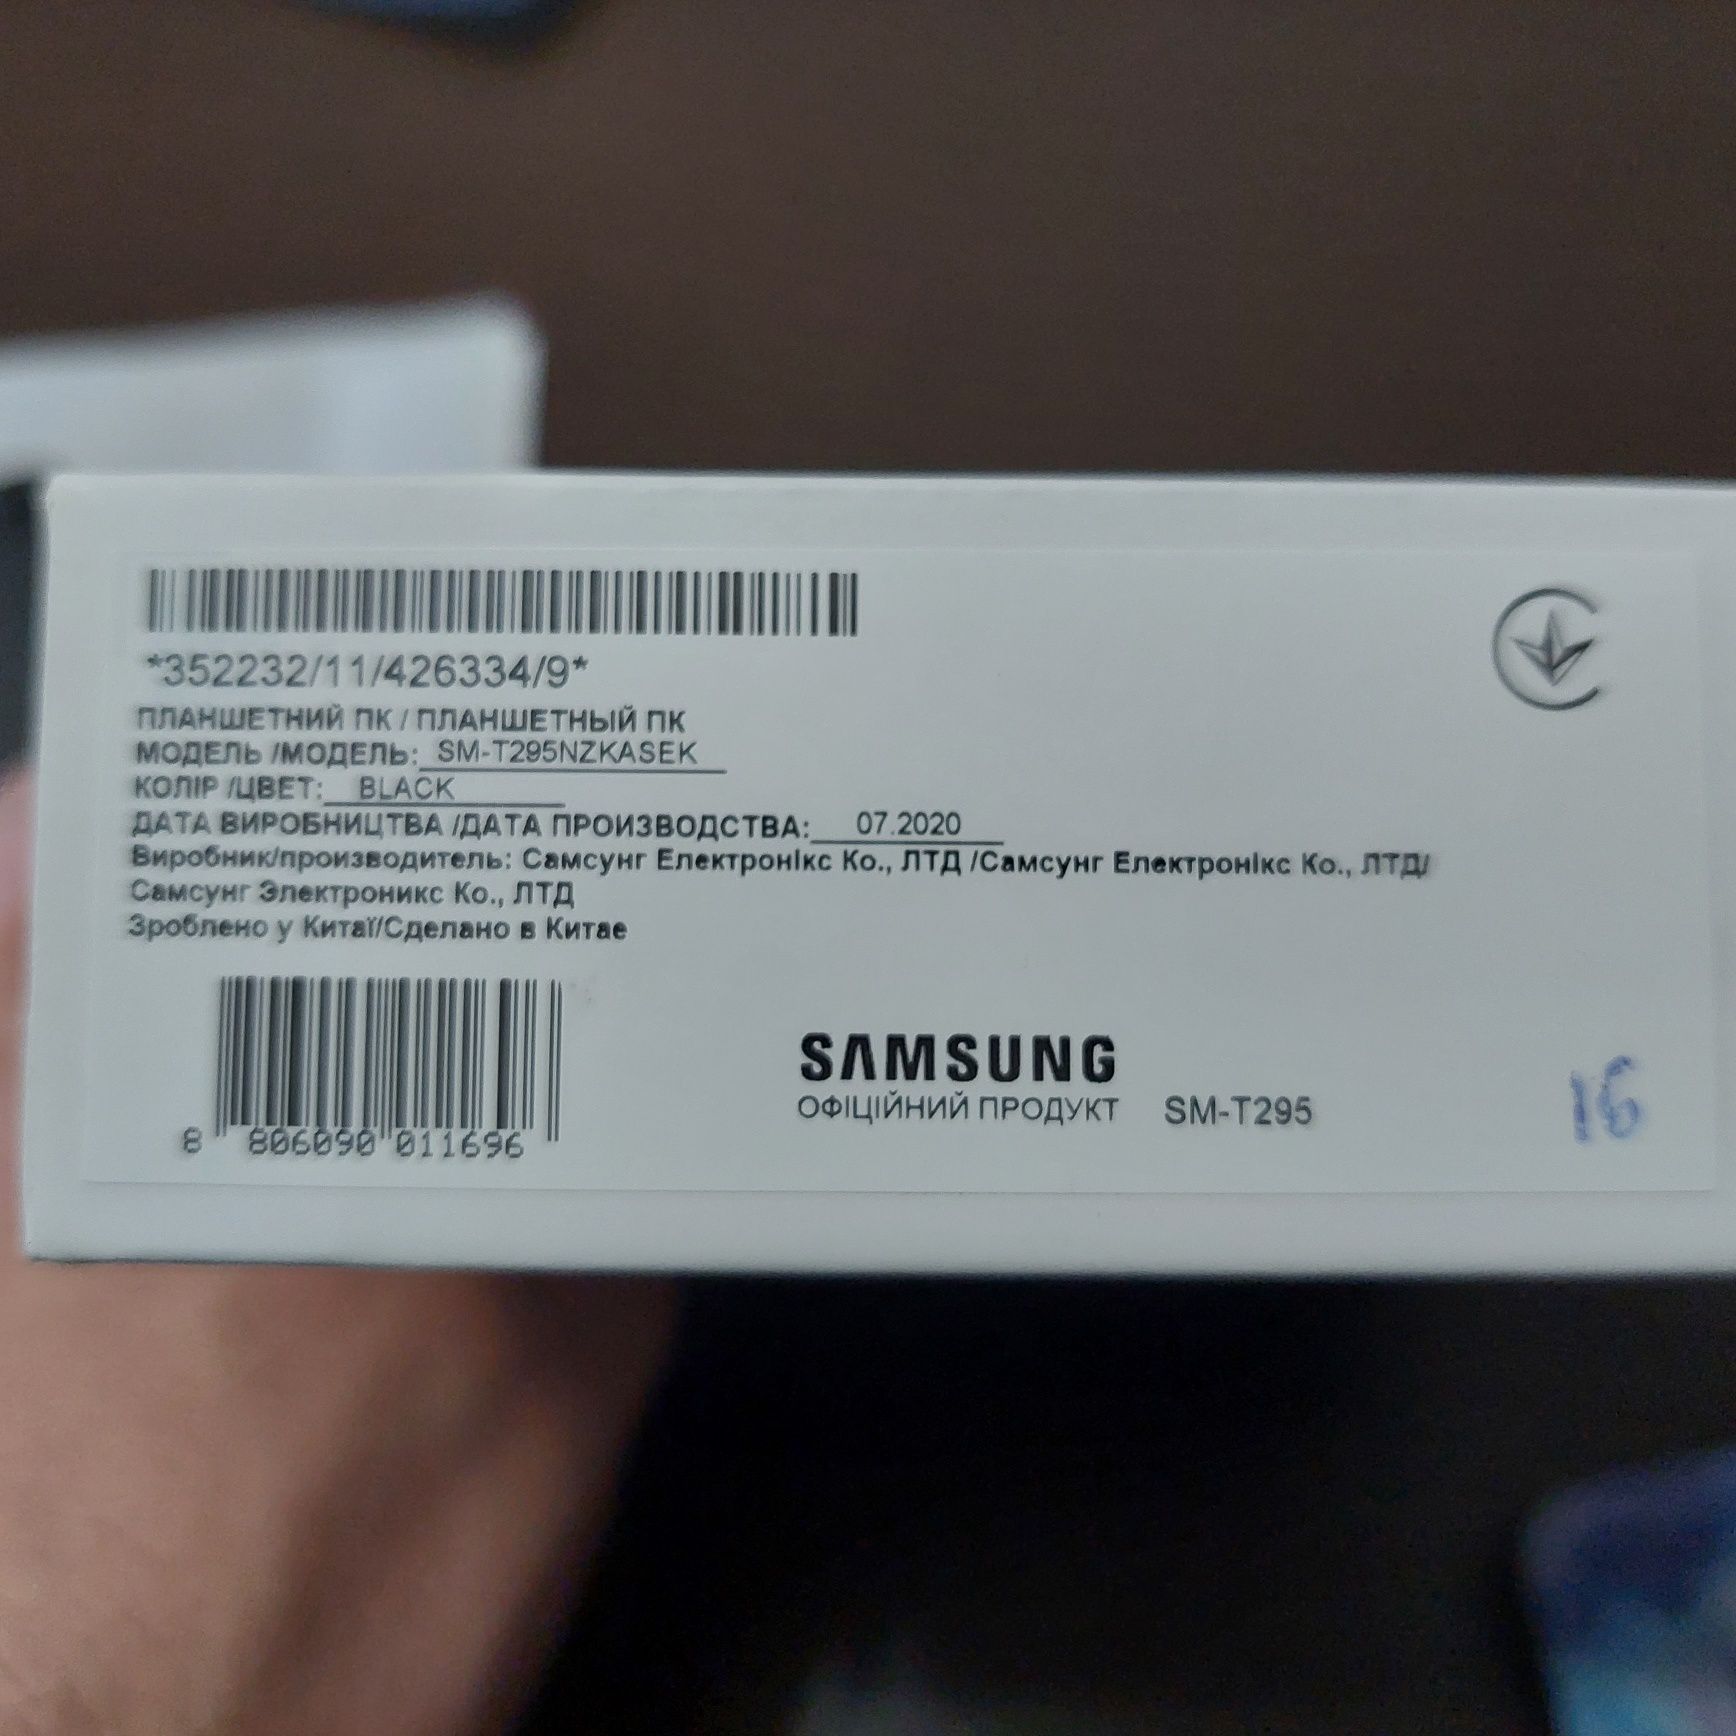 Samsung Galaxy Tab A 8.0 2020 SM-T295 4G LTE 32GB Black